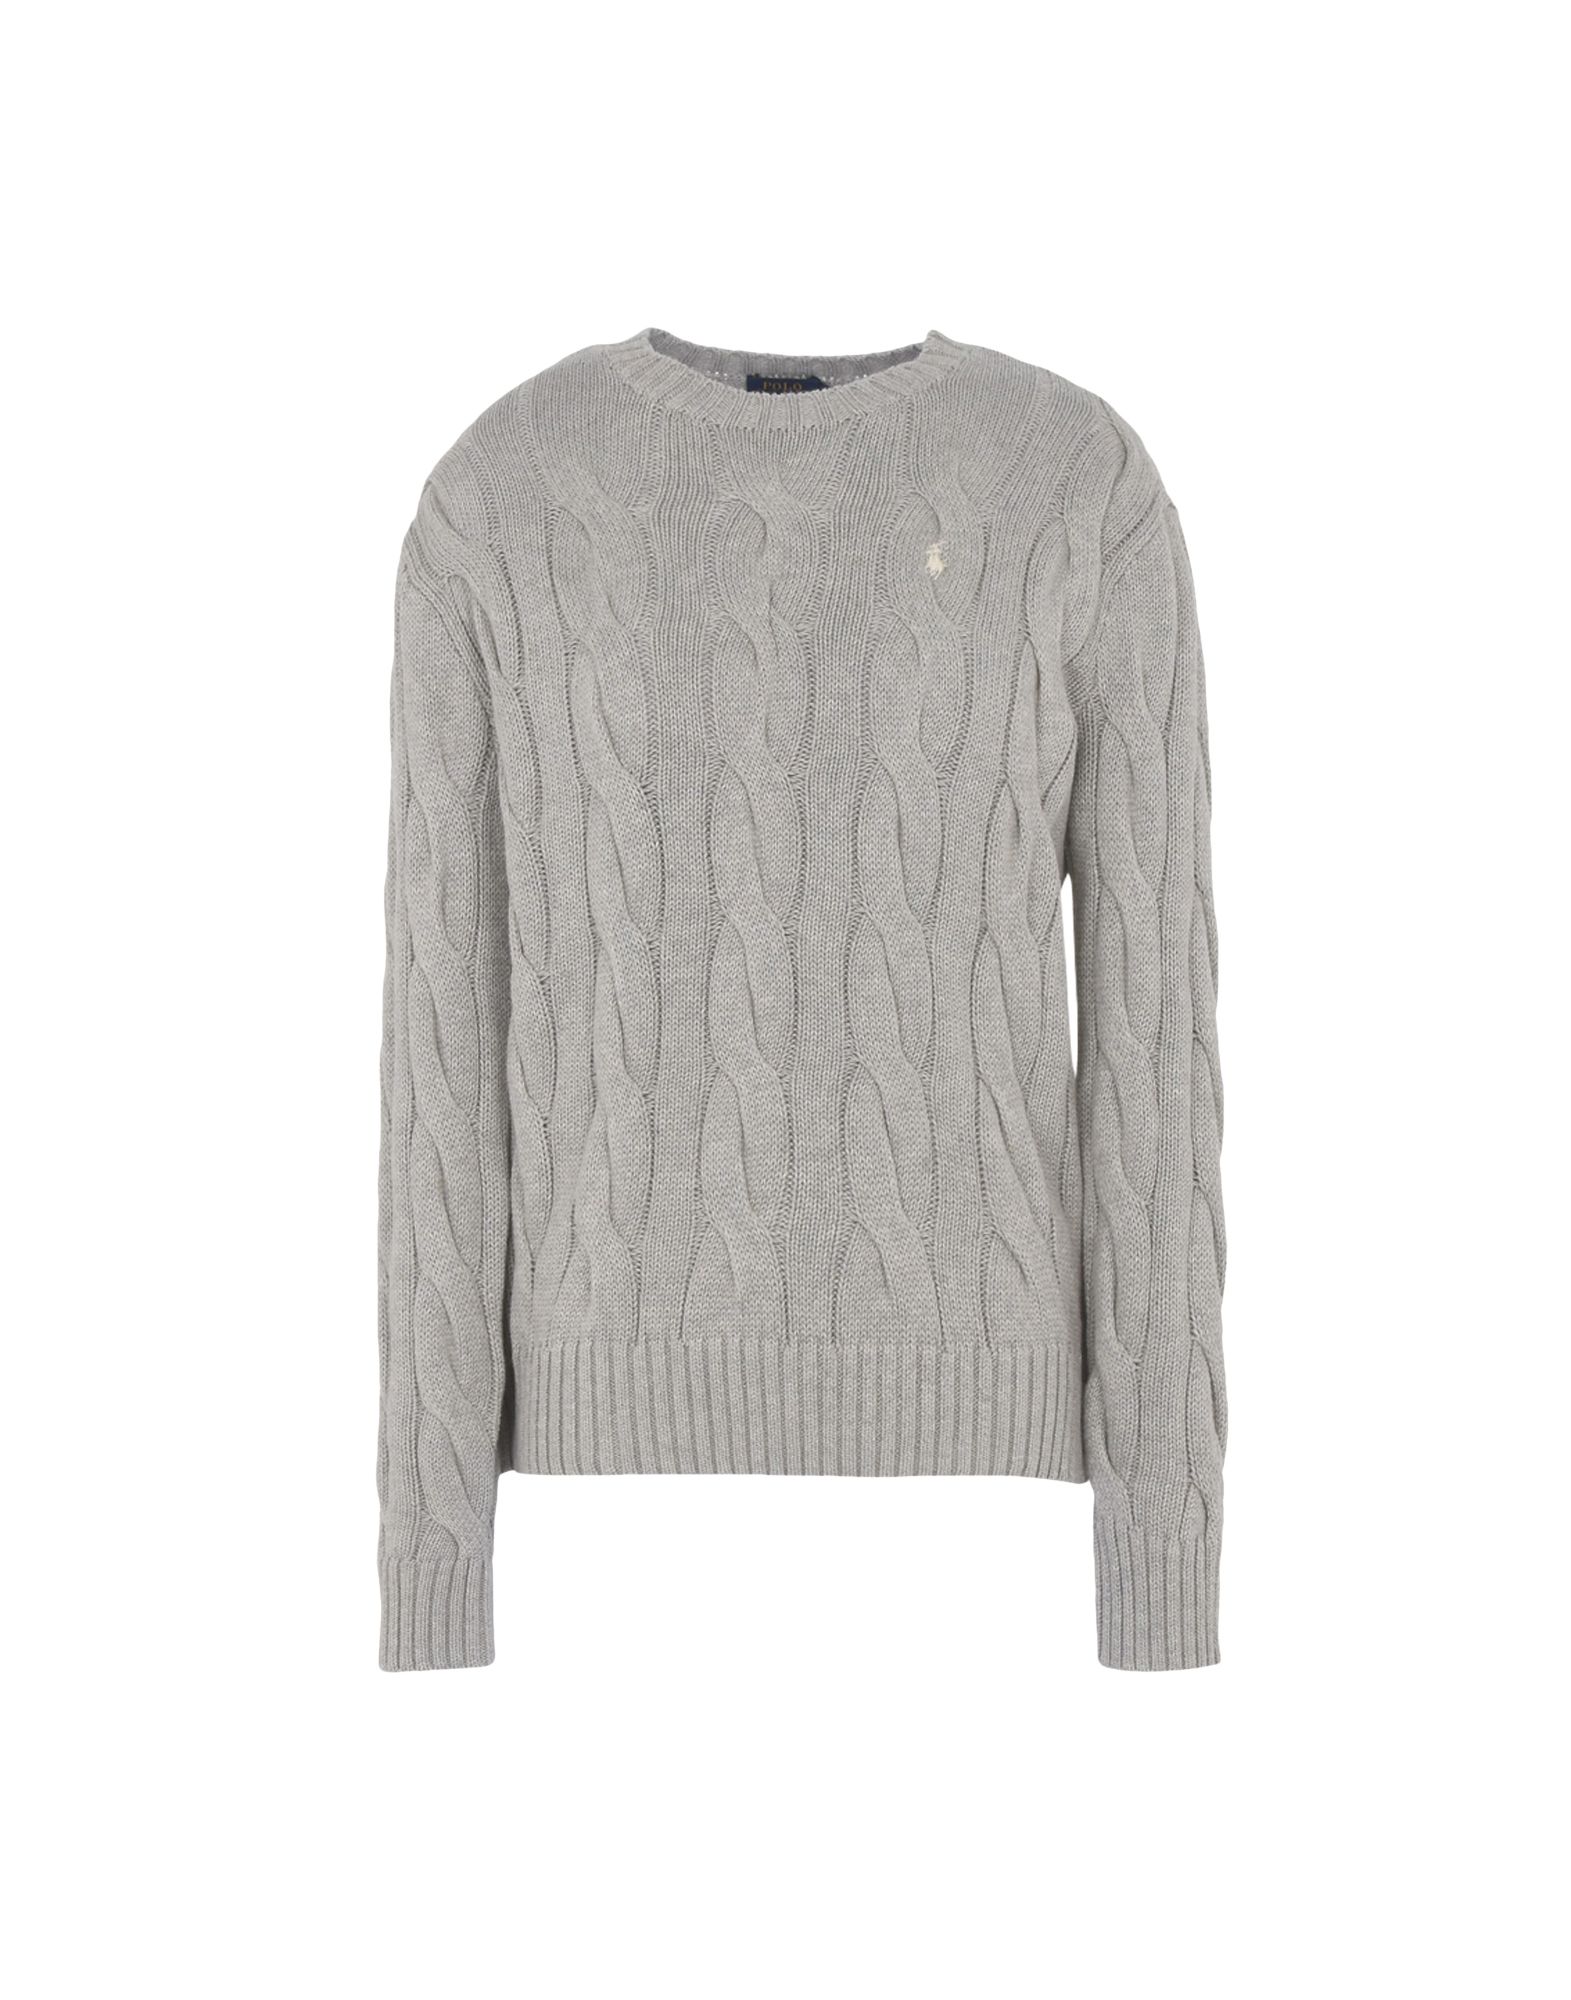 《送料無料》POLO RALPH LAUREN レディース プルオーバー ライトグレー XS コットン 100% Boxy Cable Cotton Sweater